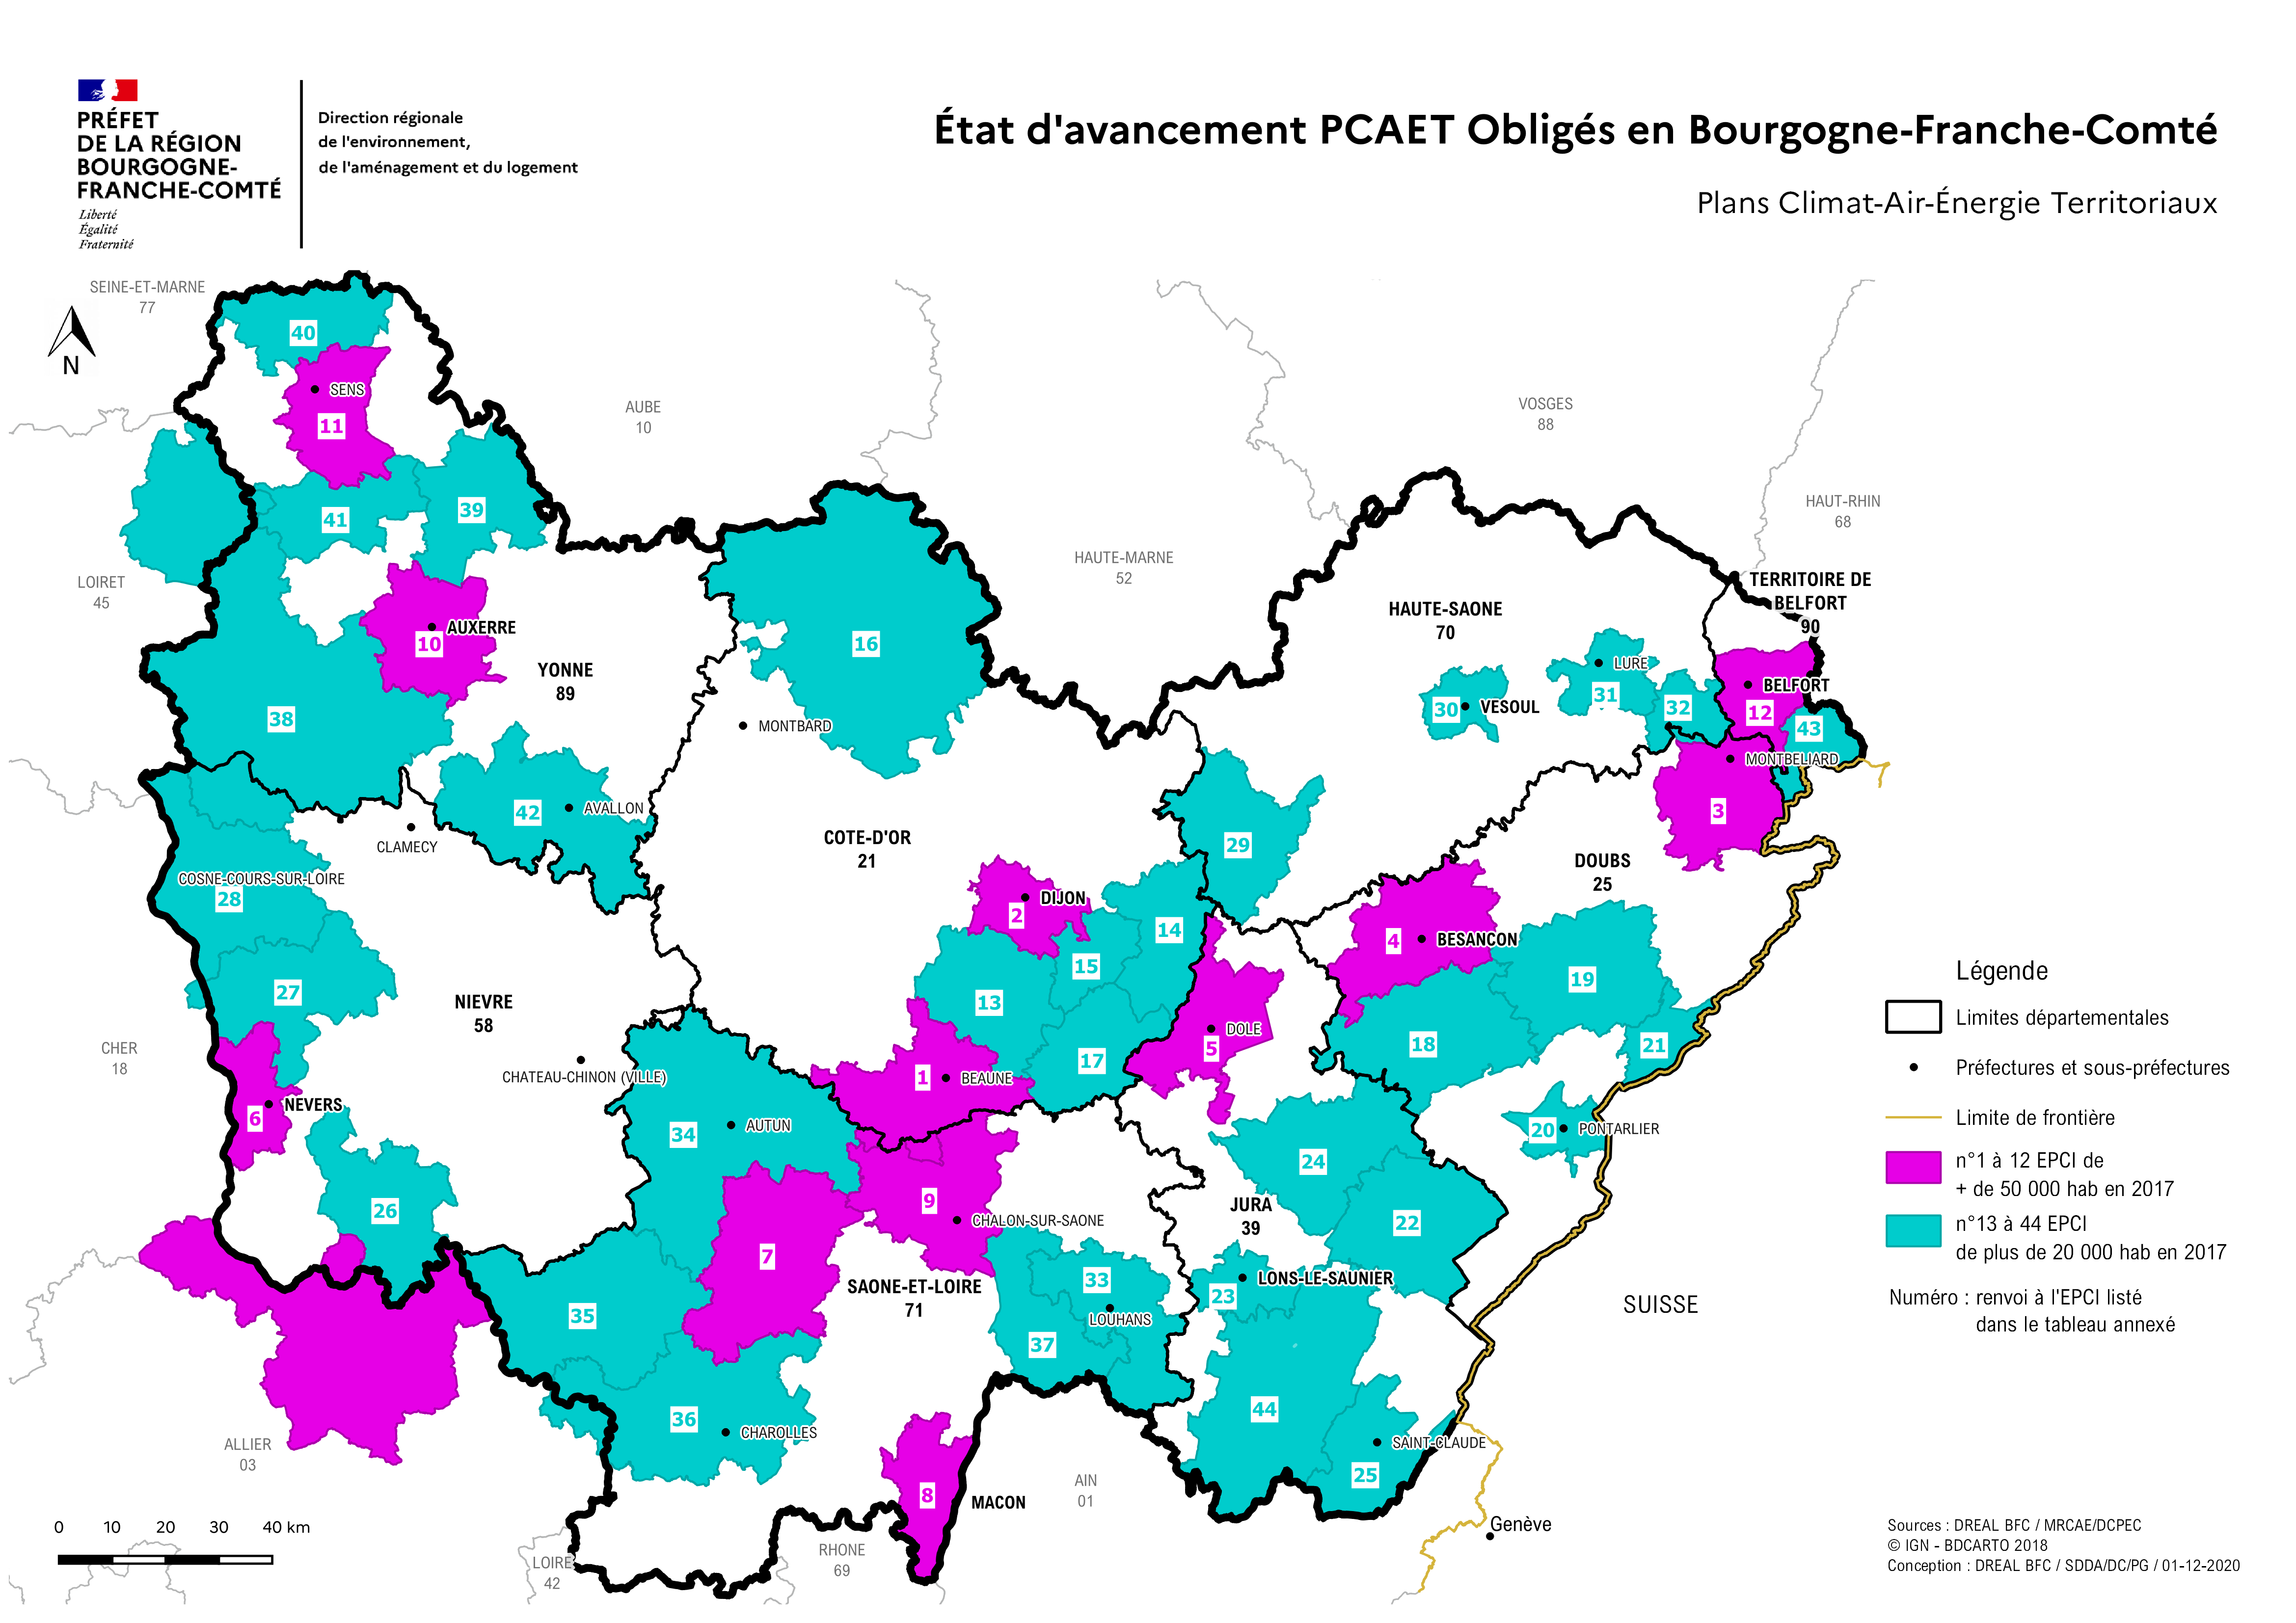 Cartographie des PCAET obligés en Bourgogne-Franche-Comté en grand format (nouvelle fenêtre)